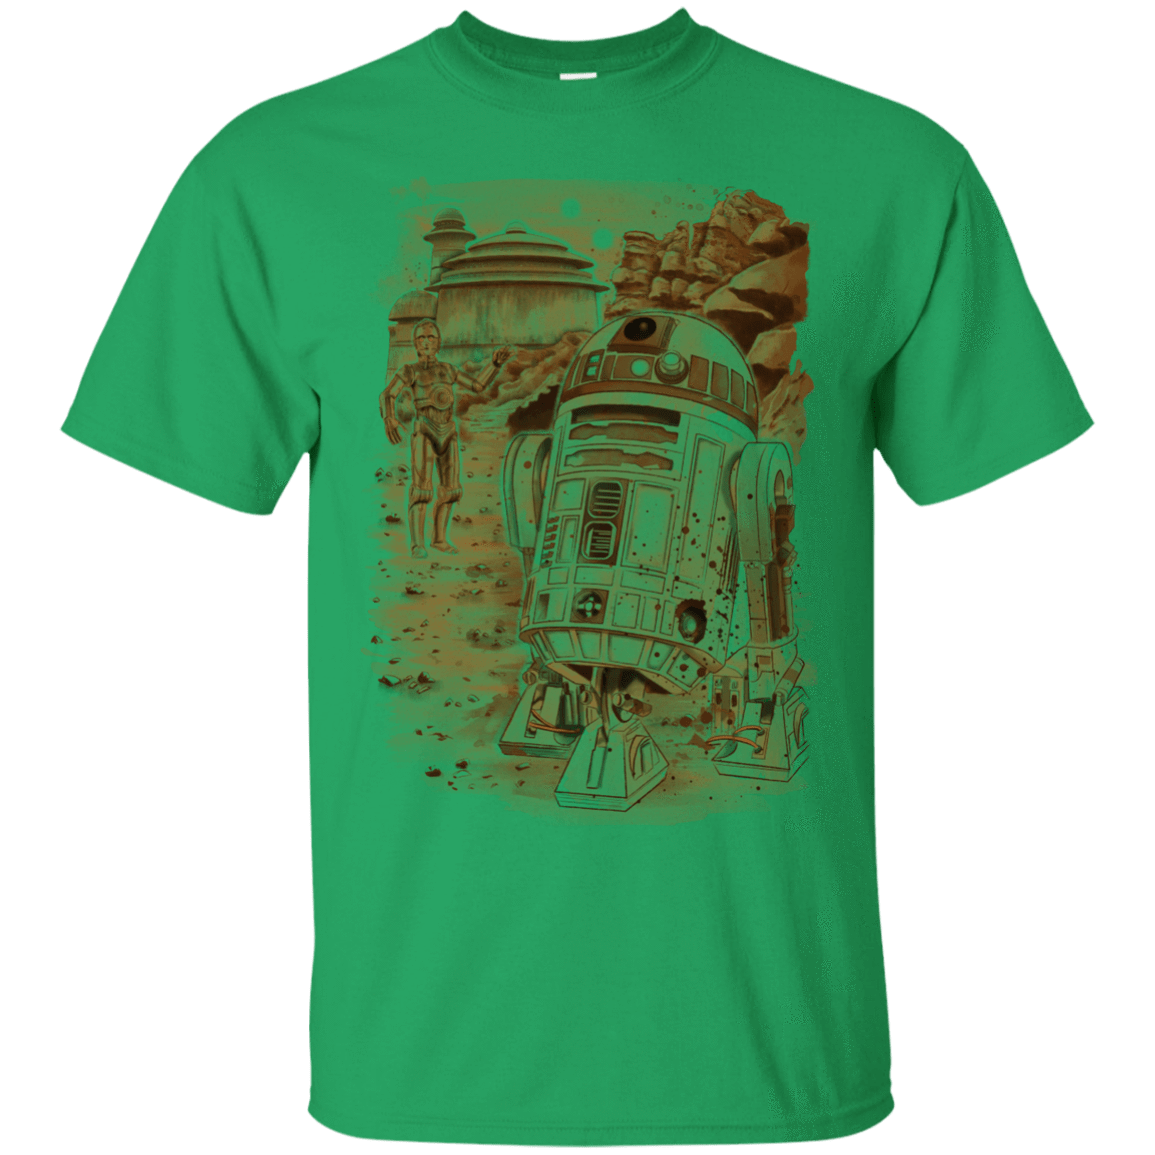 T-Shirts Irish Green / S Mission to jabba palace T-Shirt